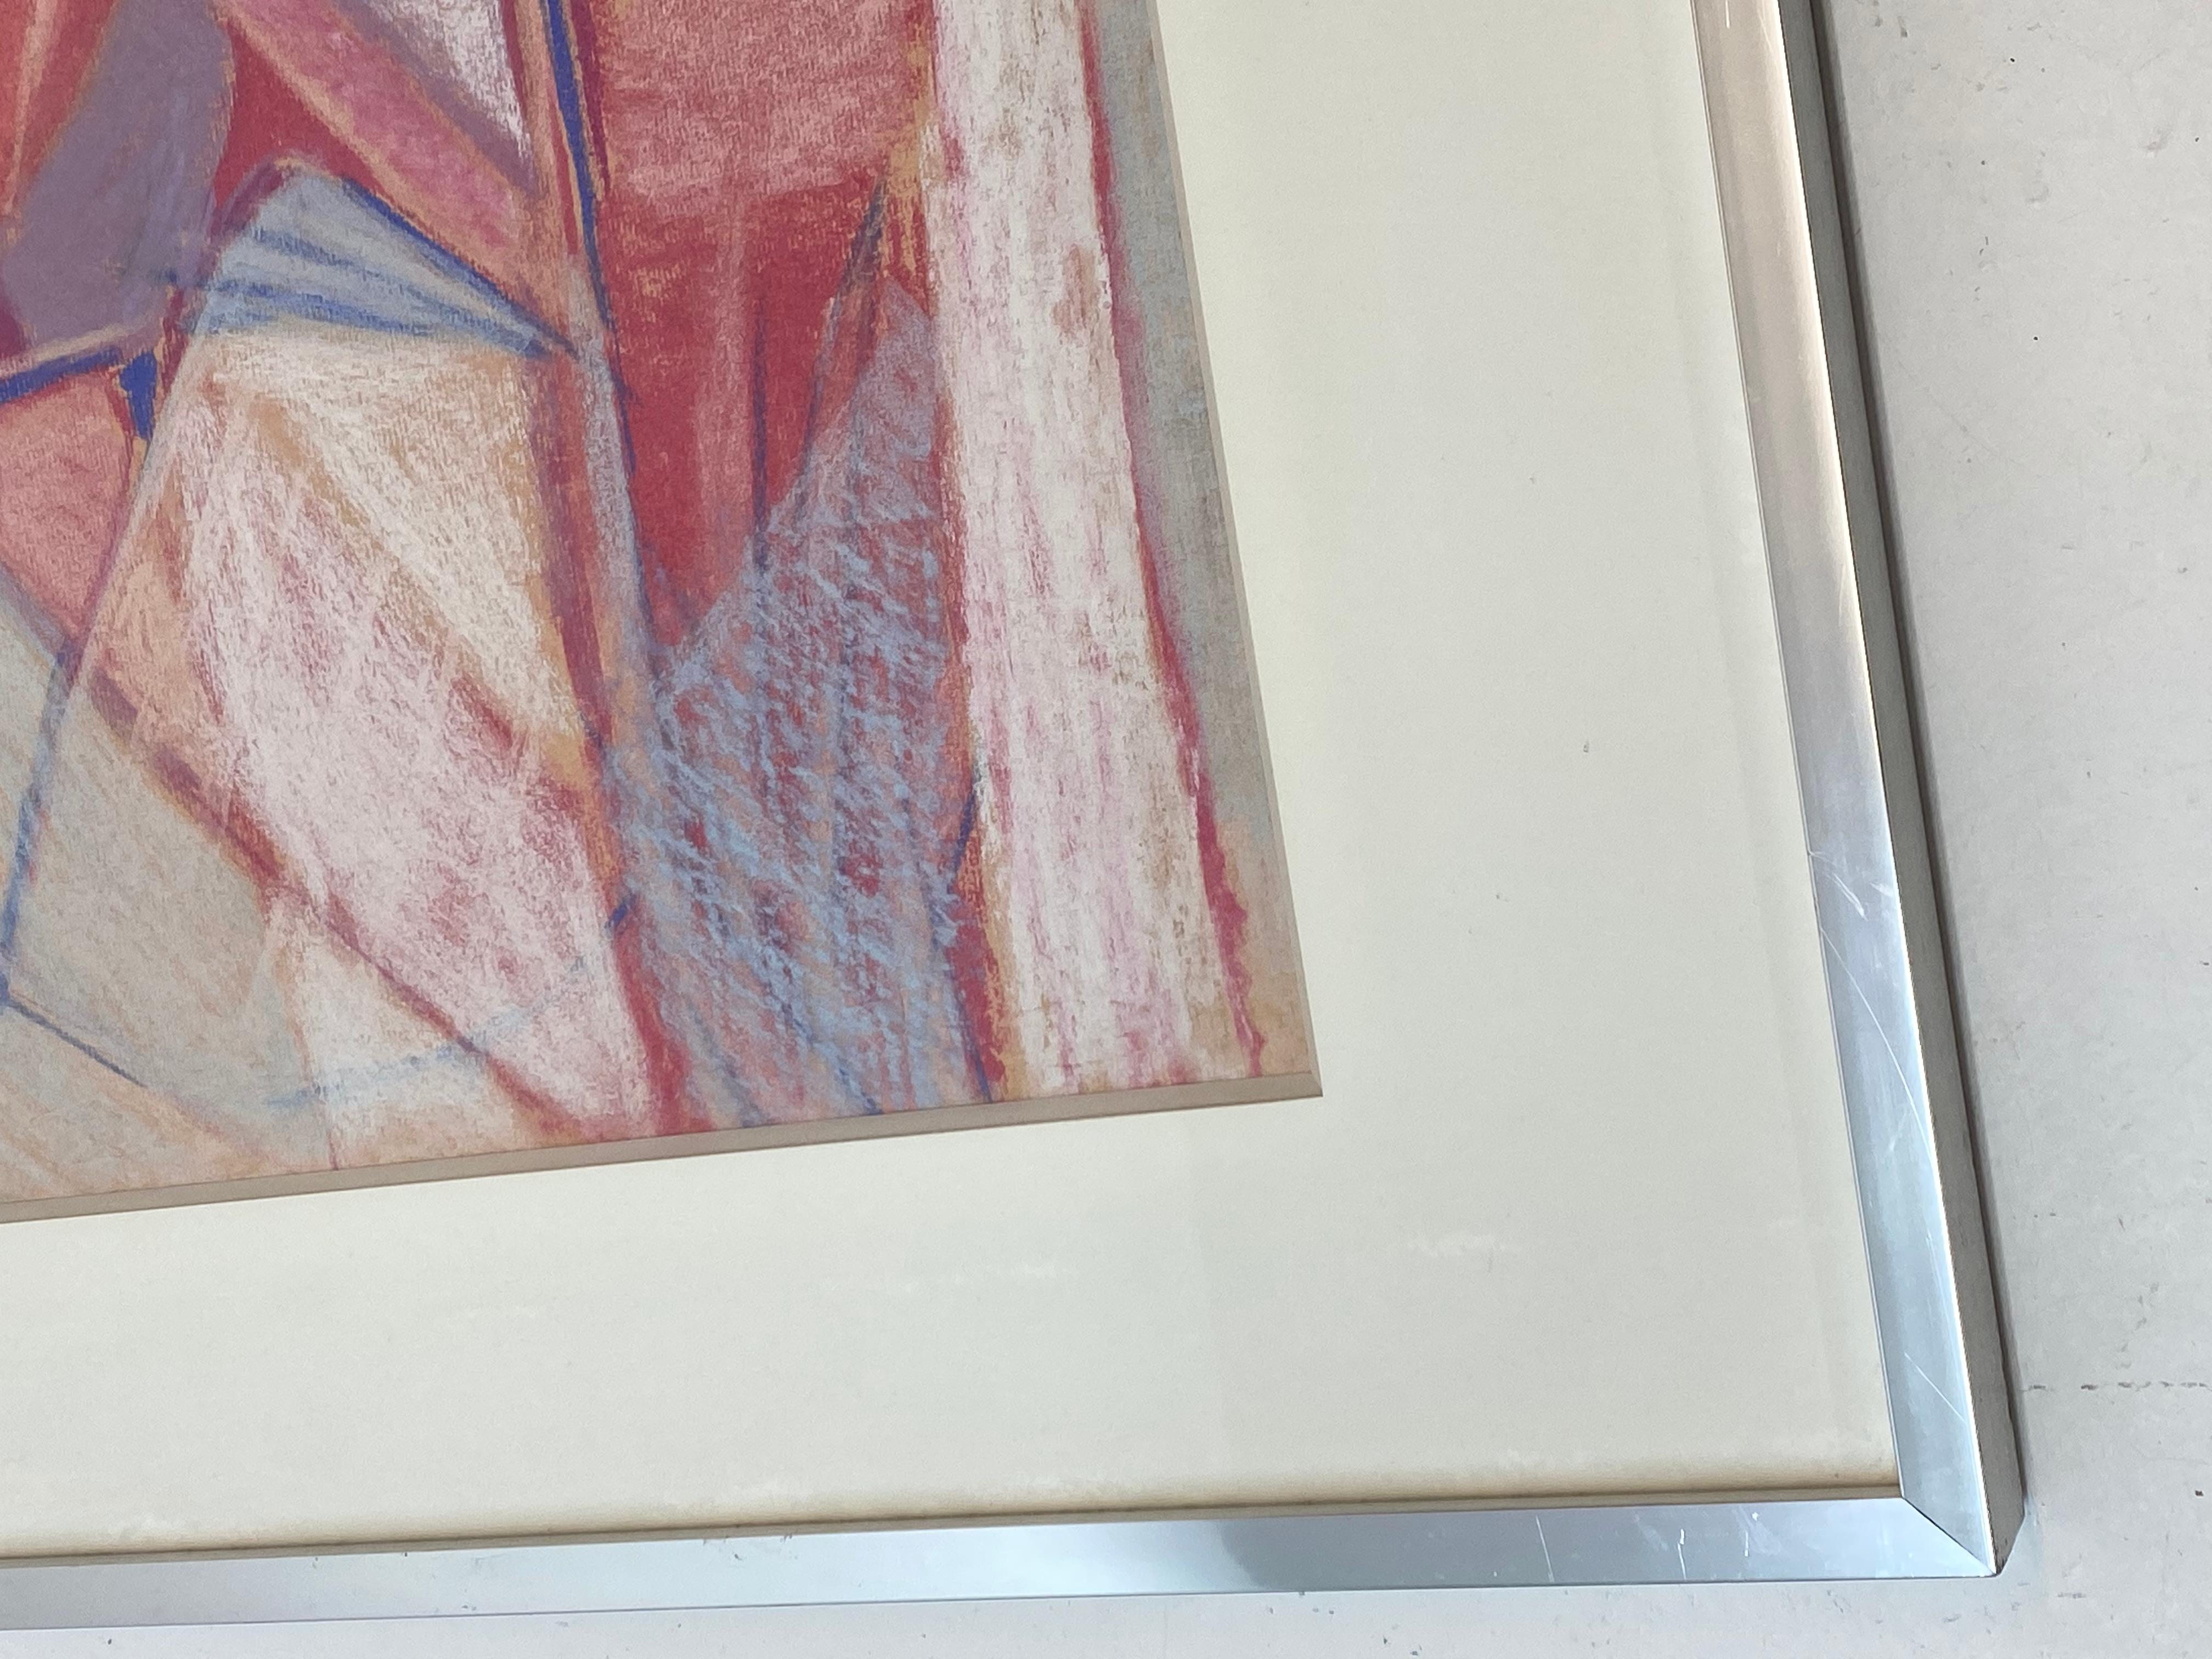 Phyllis Ciment Abstrakte Pastellmalerei ca. 1970er Jahre

Rot, weiß und blau - Feine bunte abstrakte Malerei

24